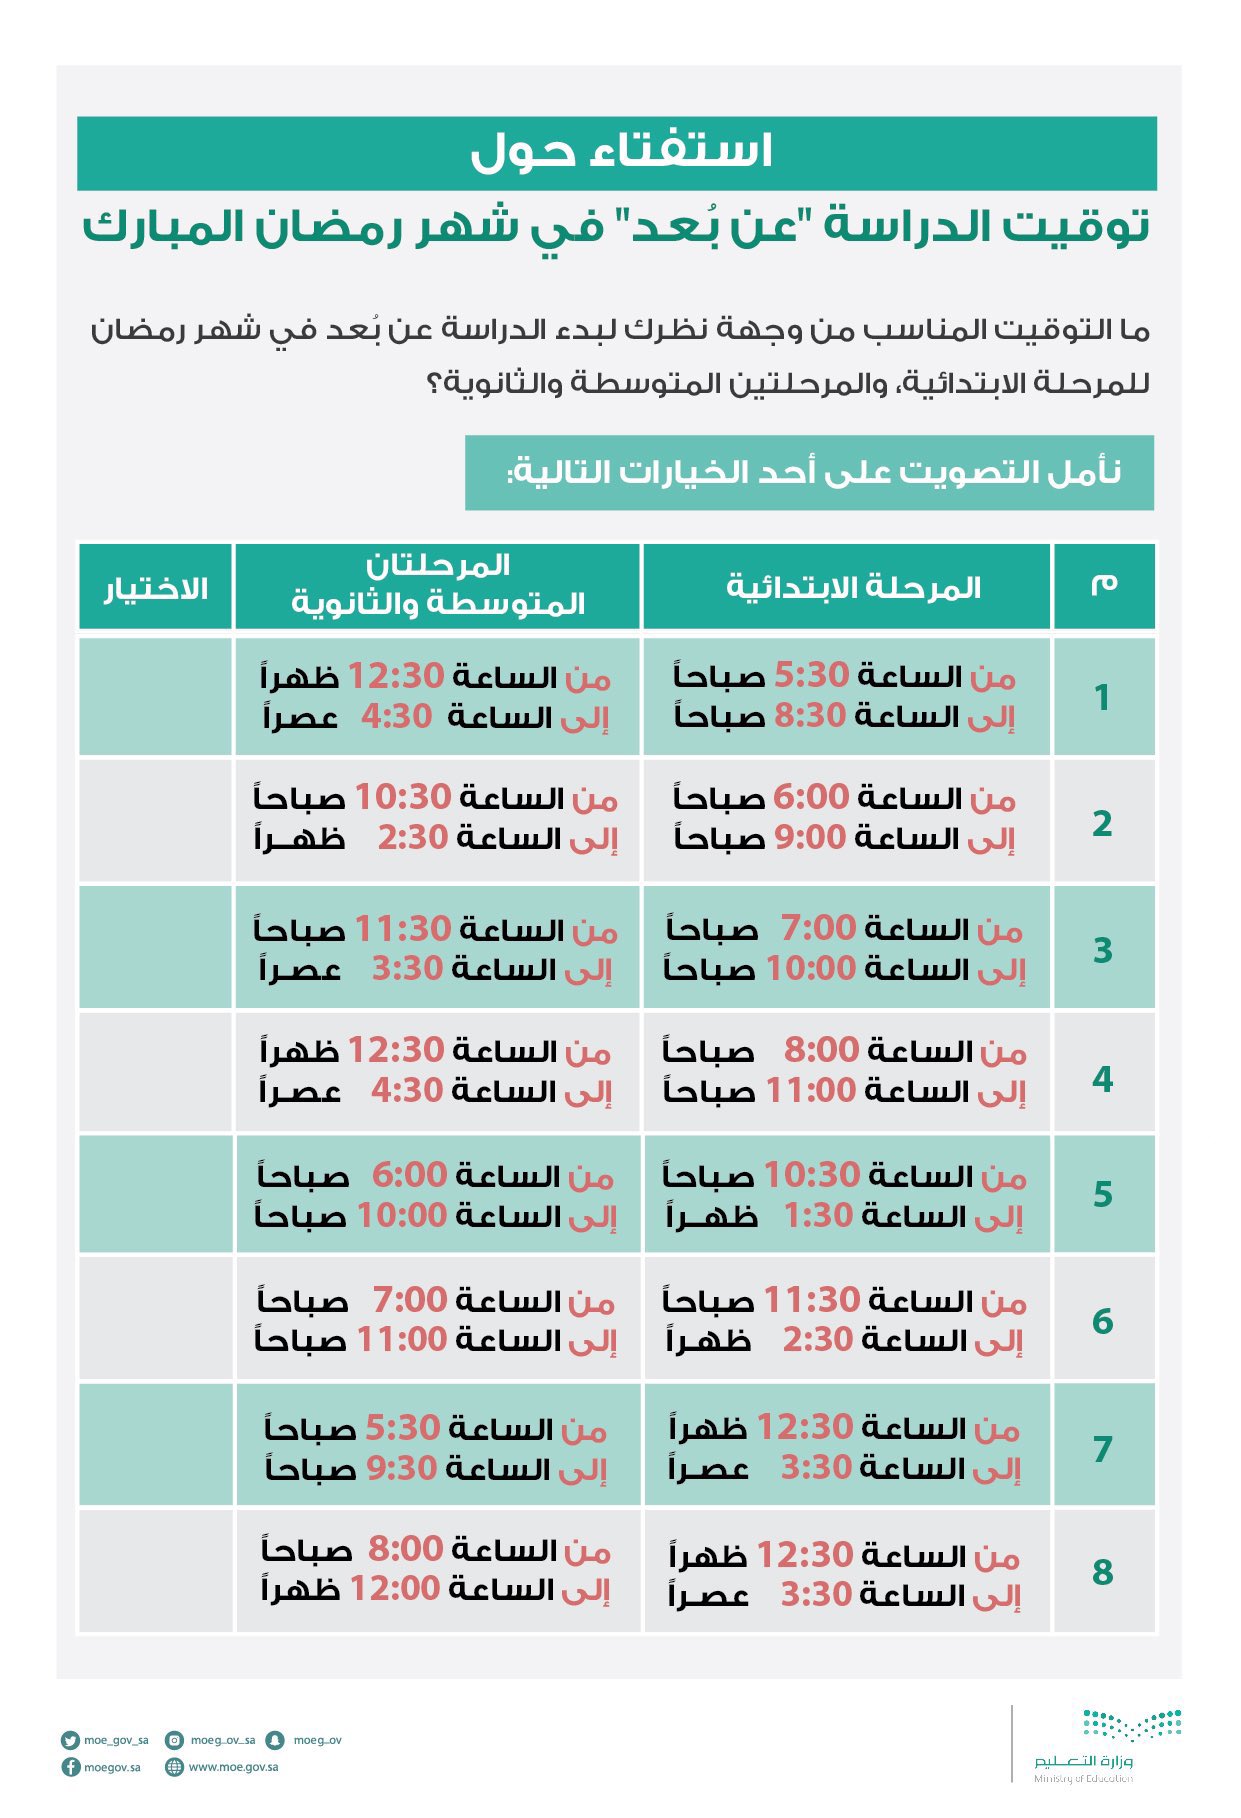 التعليم بالسعودية نتيجة استفتاء أوقات الدراسة في شهر رمضان للعام الدراسي من رابط نظام نور 1442